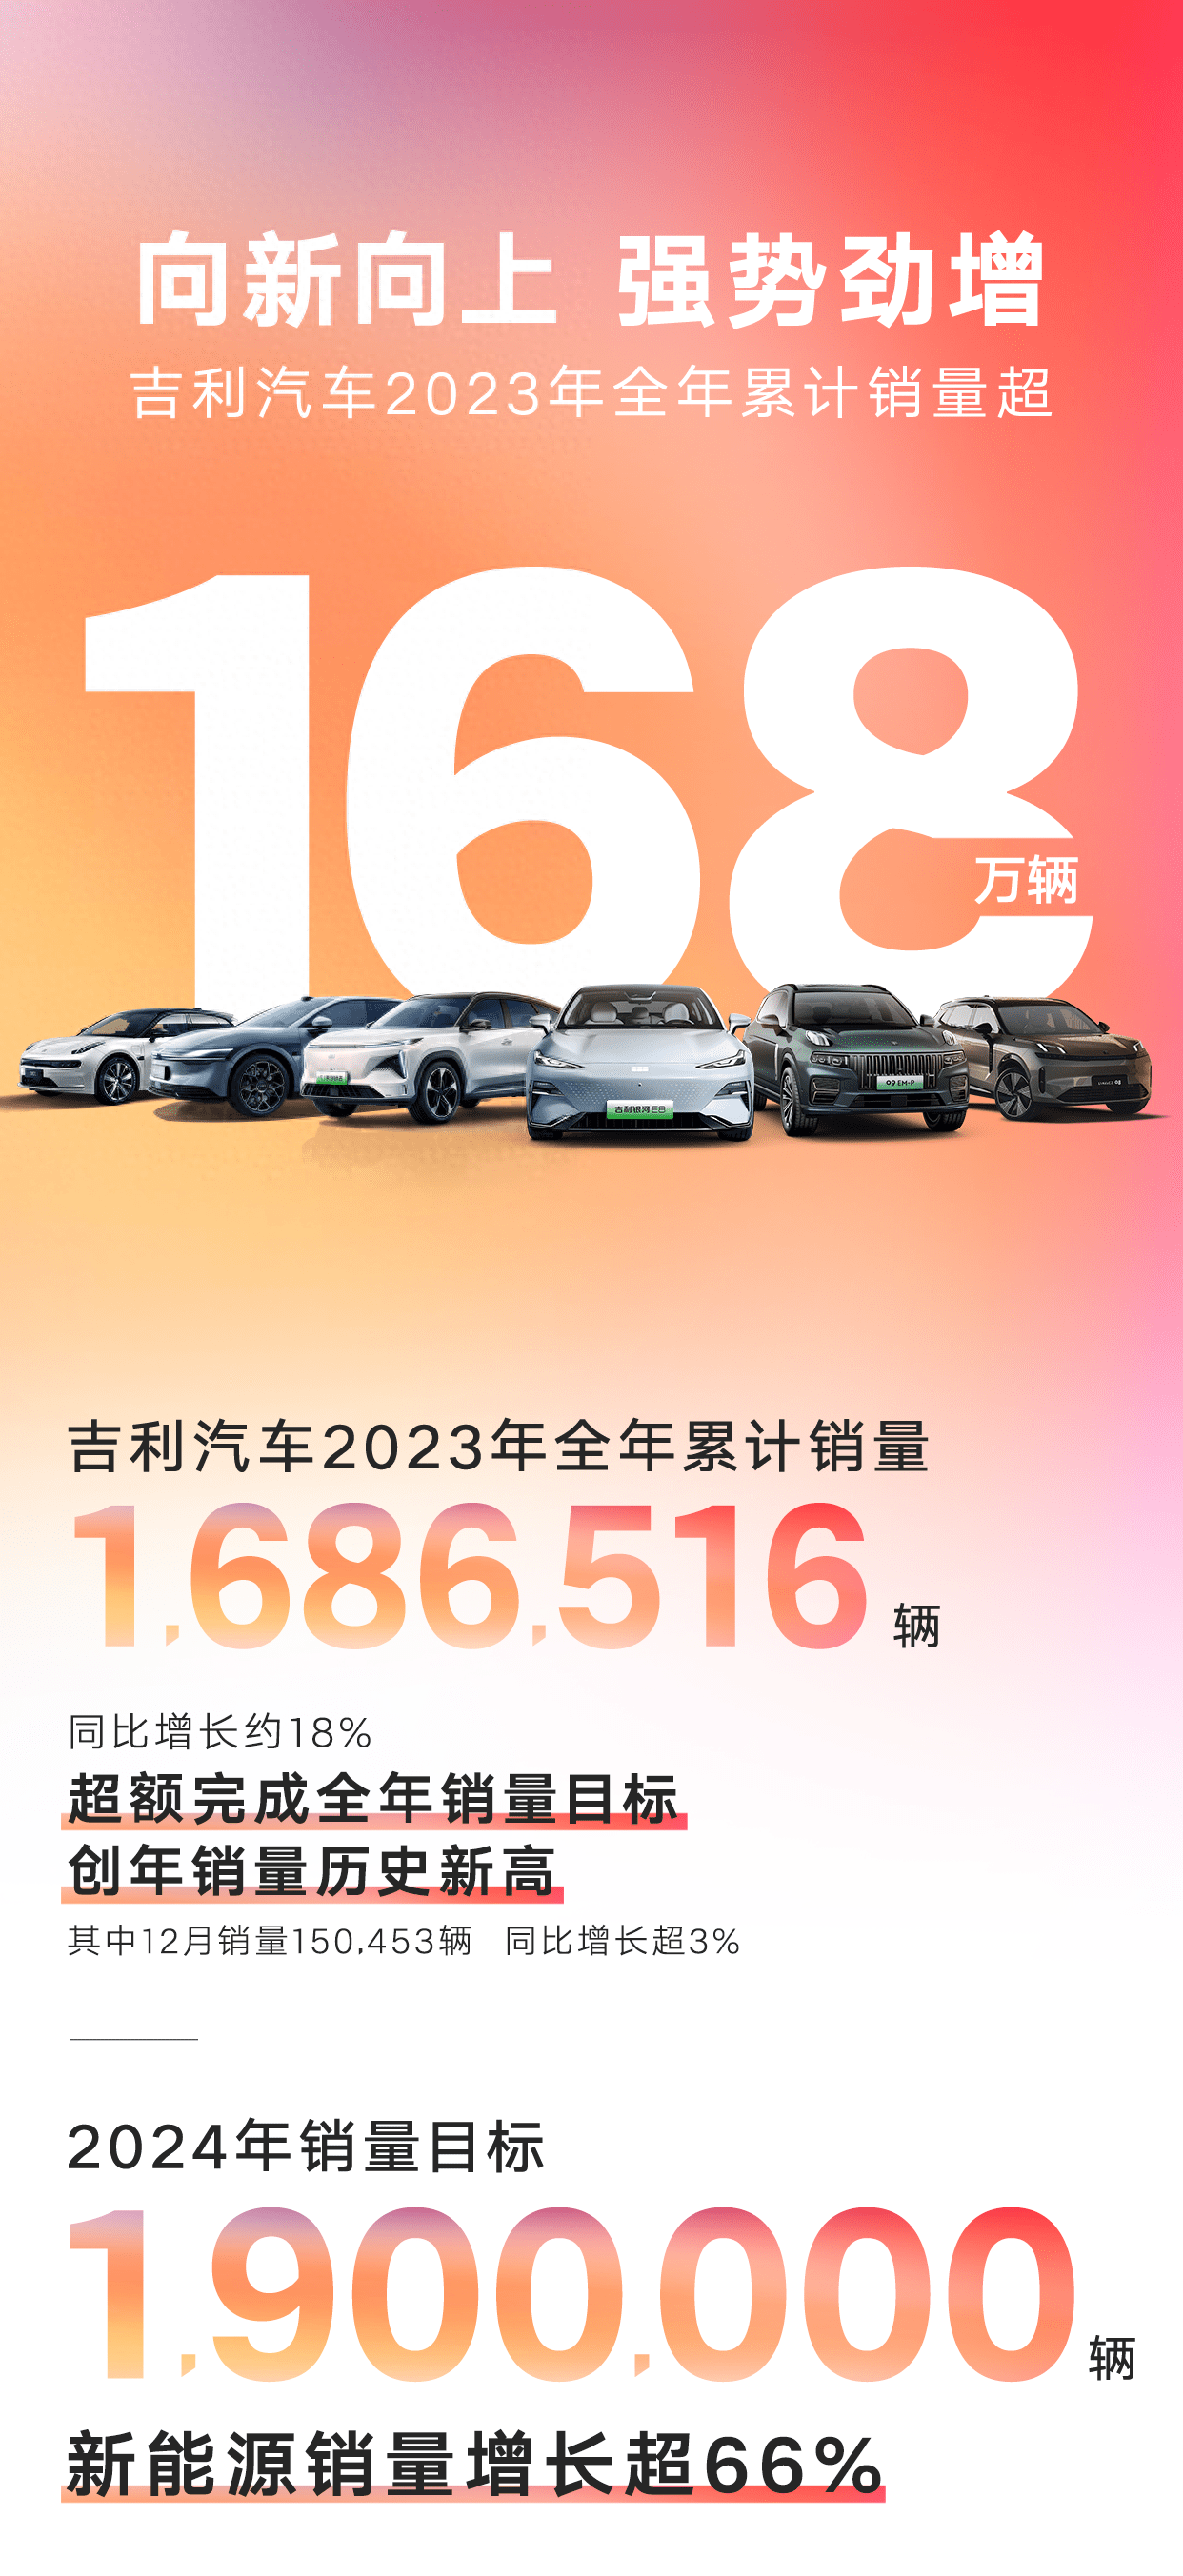 超168万辆 吉利汽车2023年度销量公布 今年冲击190万辆2023年度销量